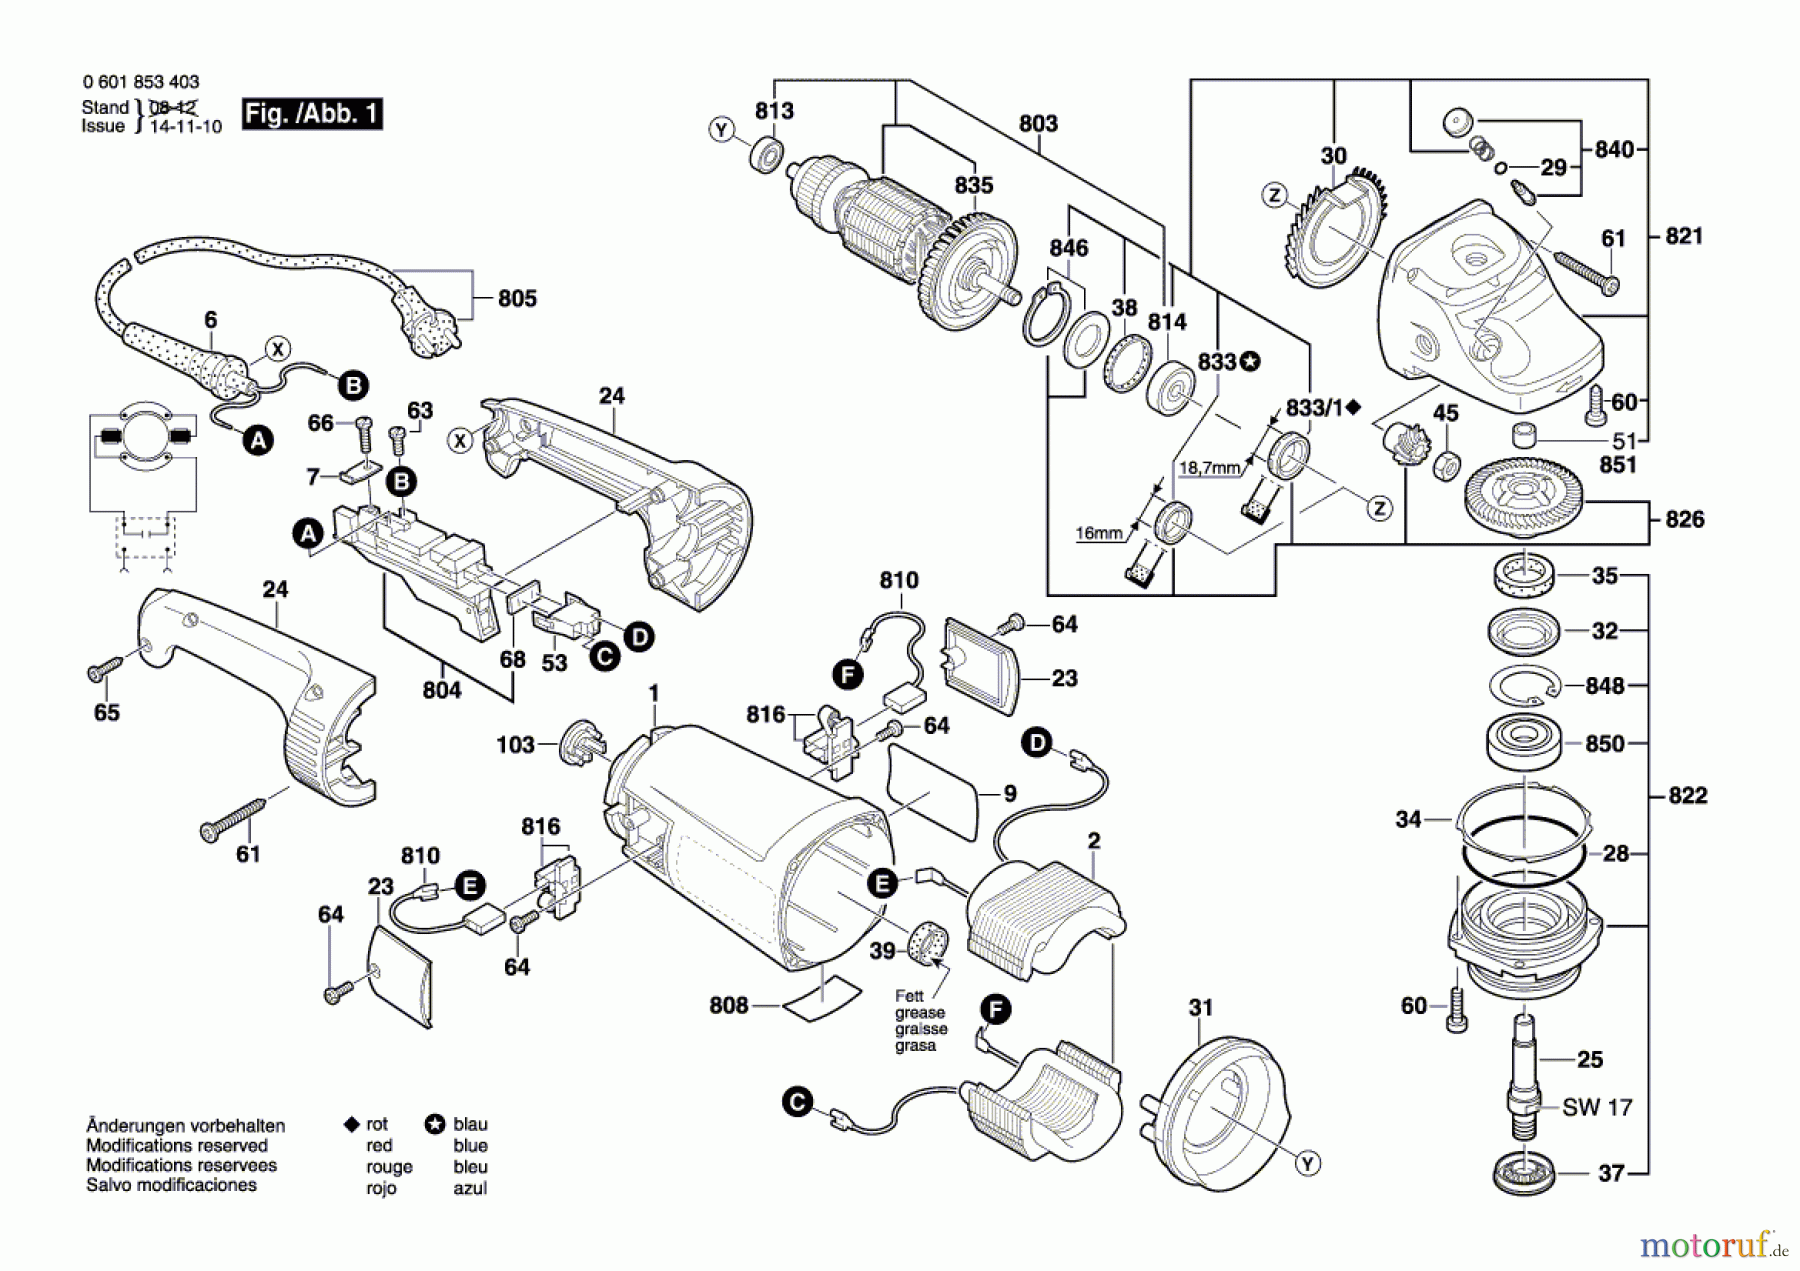  Bosch Werkzeug Winkelschleifer GWS 24-180 H Seite 1